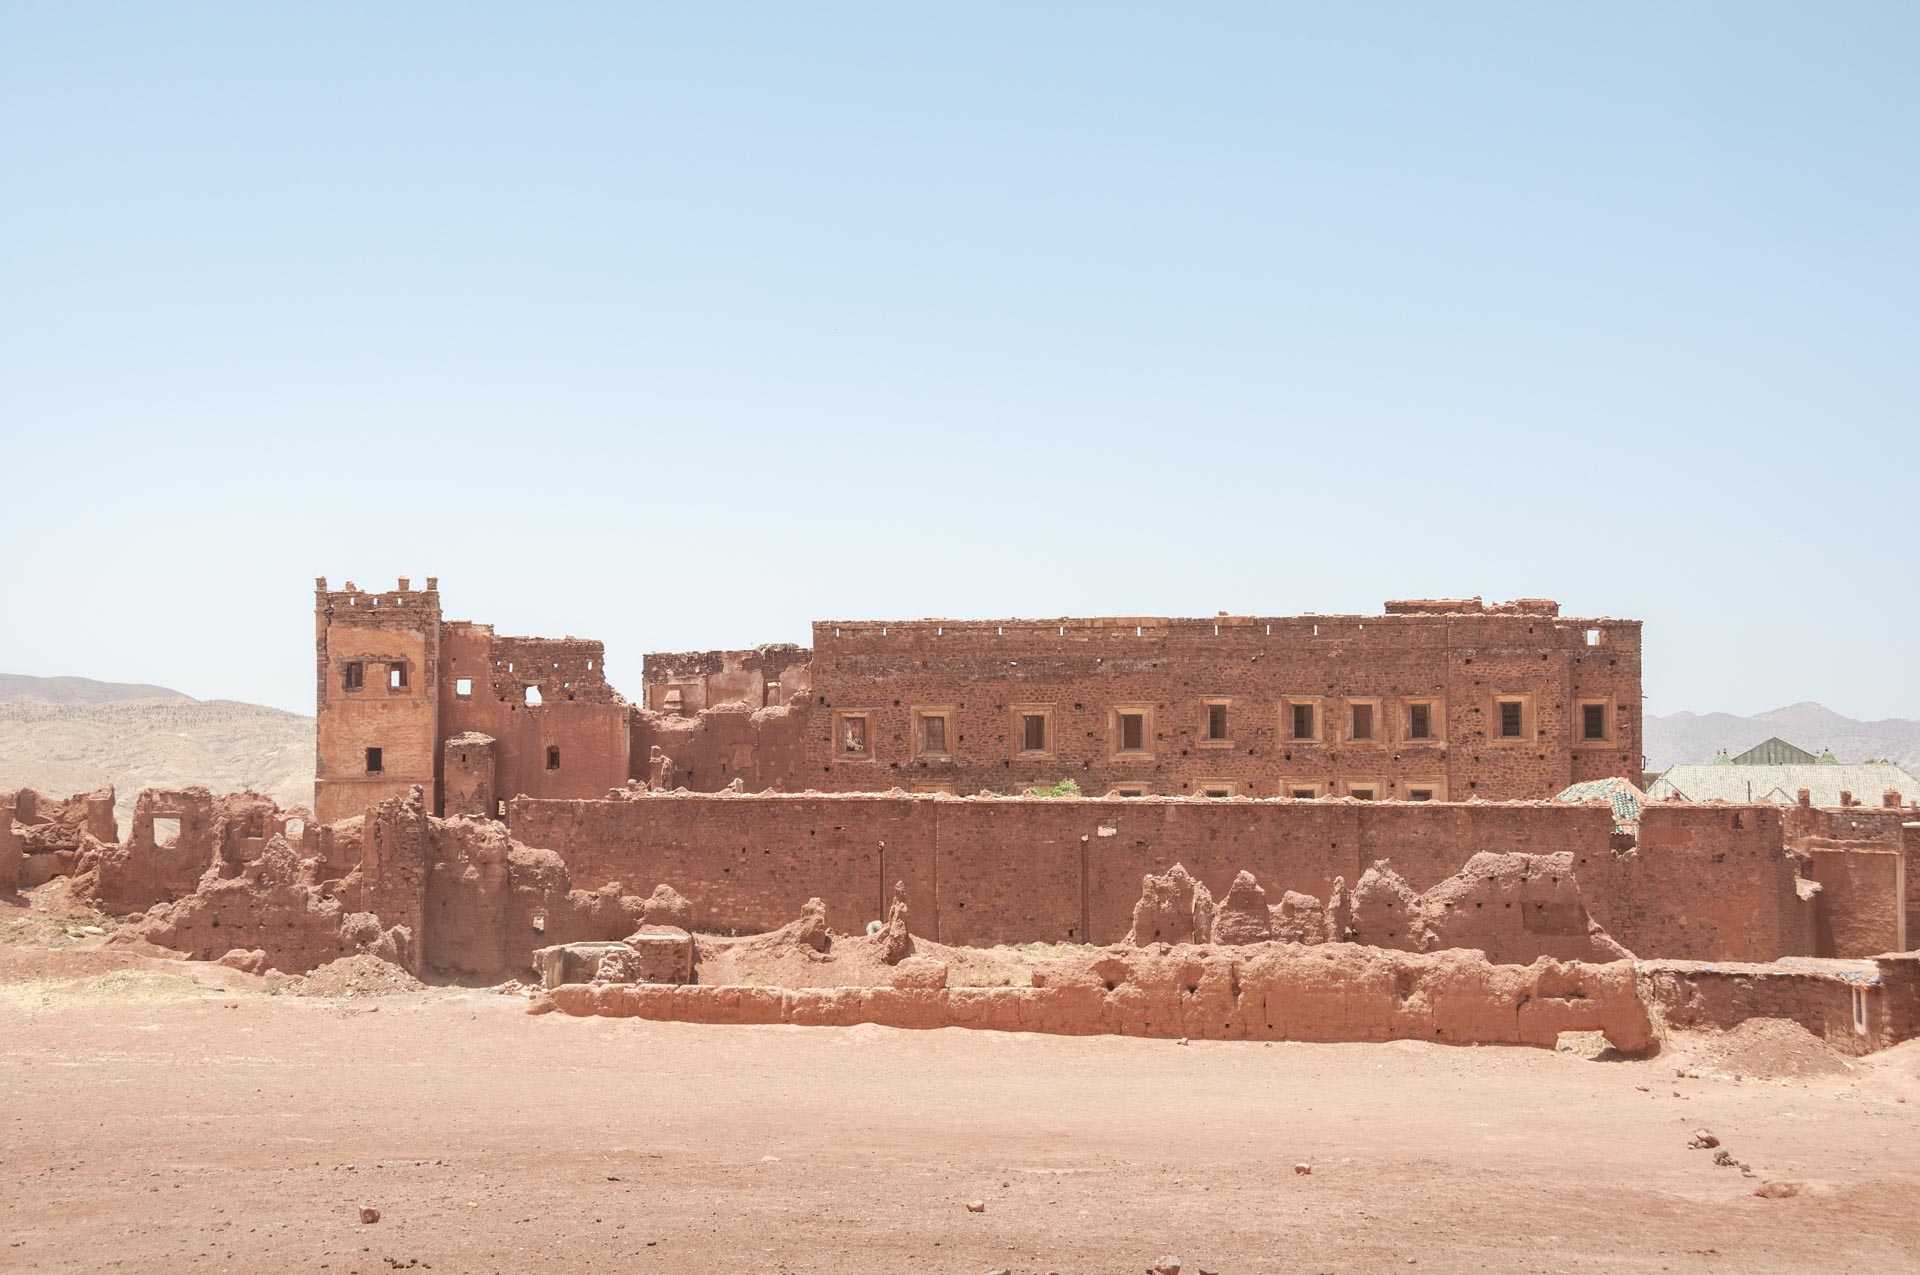 Strasse der Kasbah in Marokko